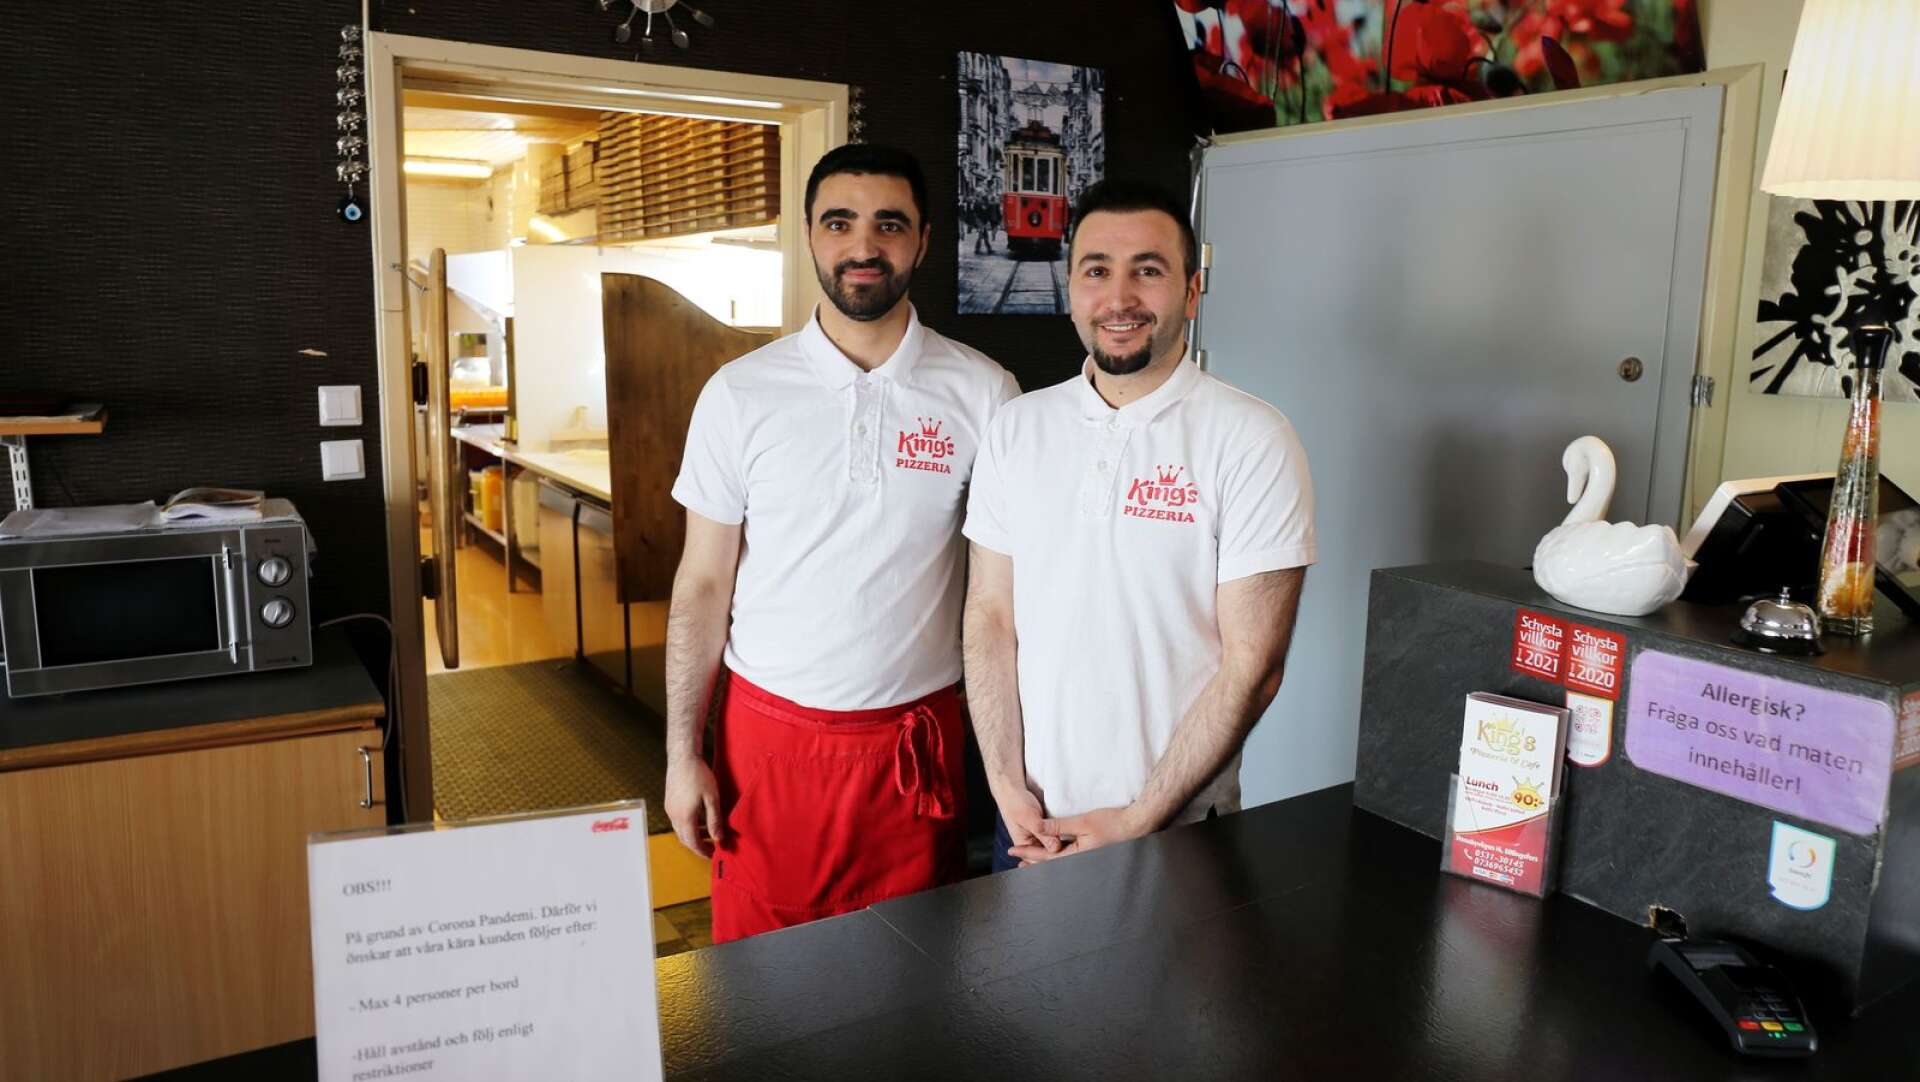 Alla restauranger har inte drabbats negativt under det tuffa pandemiåret. Bröderna Zafer Al och Ömer Al på Kings pizzeria i Billingsfors, berättar att pandemin snarare har lett till ett rekordår på sin restaurang. 